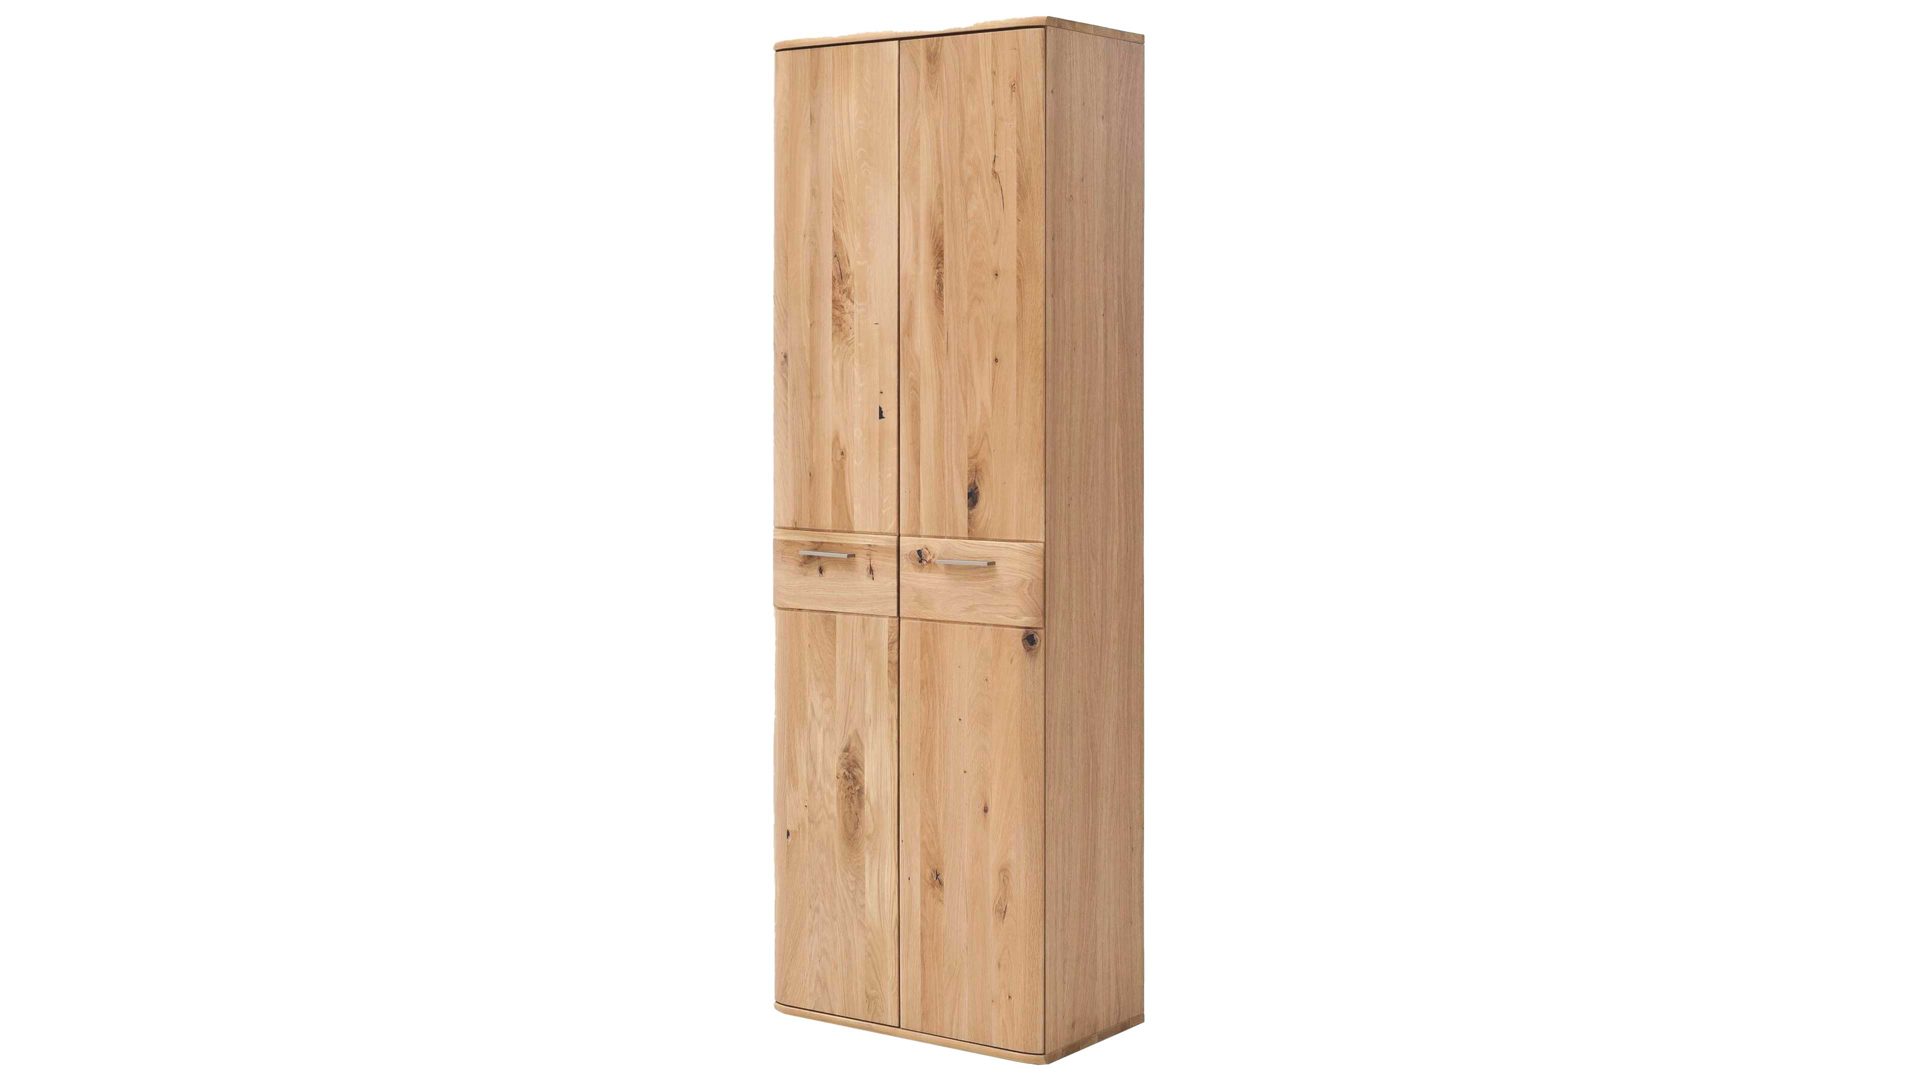 Garderobenschrank Mca furniture aus Holz in Holzfarben Garderobenschrank Nilo biancofarbene Balkeneiche – zwei Türen